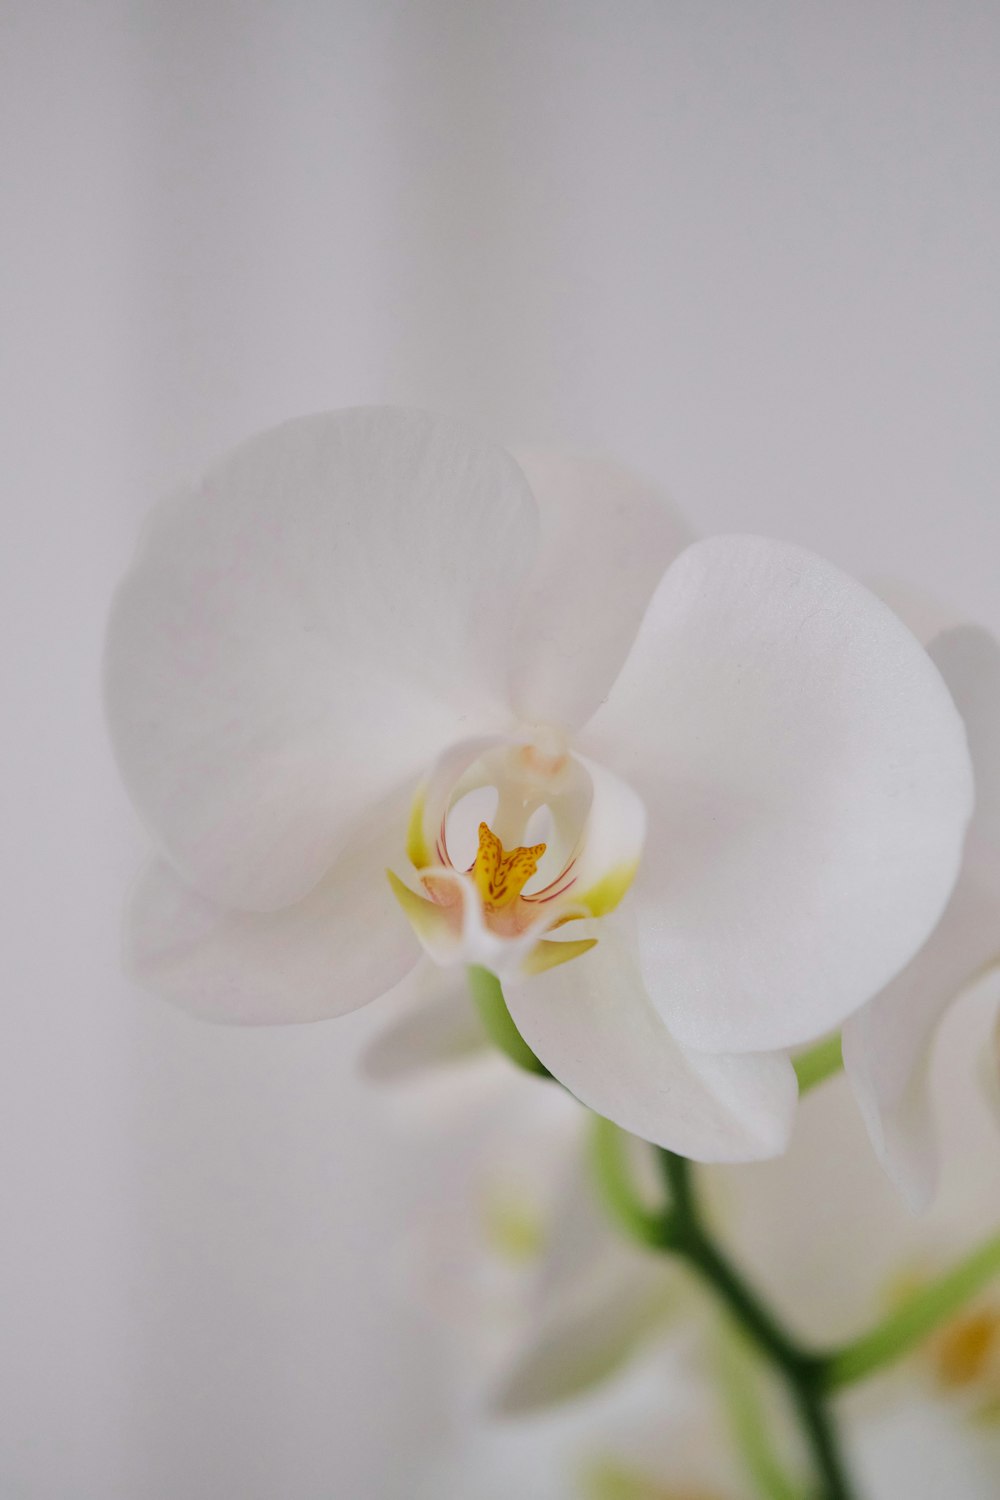 gros plan d’une fleur blanche dans un vase